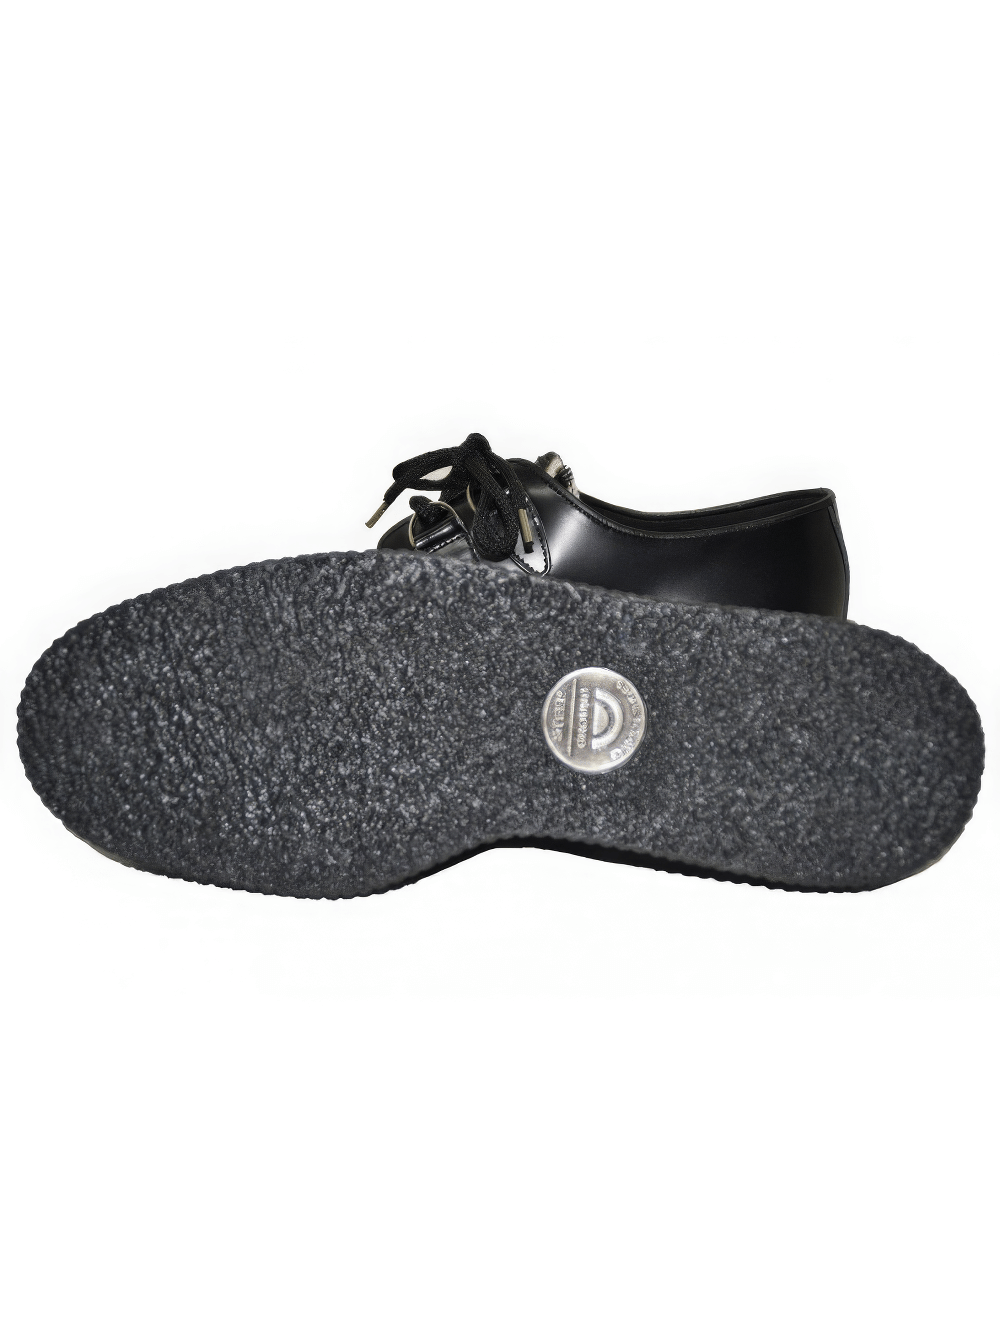 Unisex-Creeper-Schuhe aus Leder und Fell mit Gummisohle